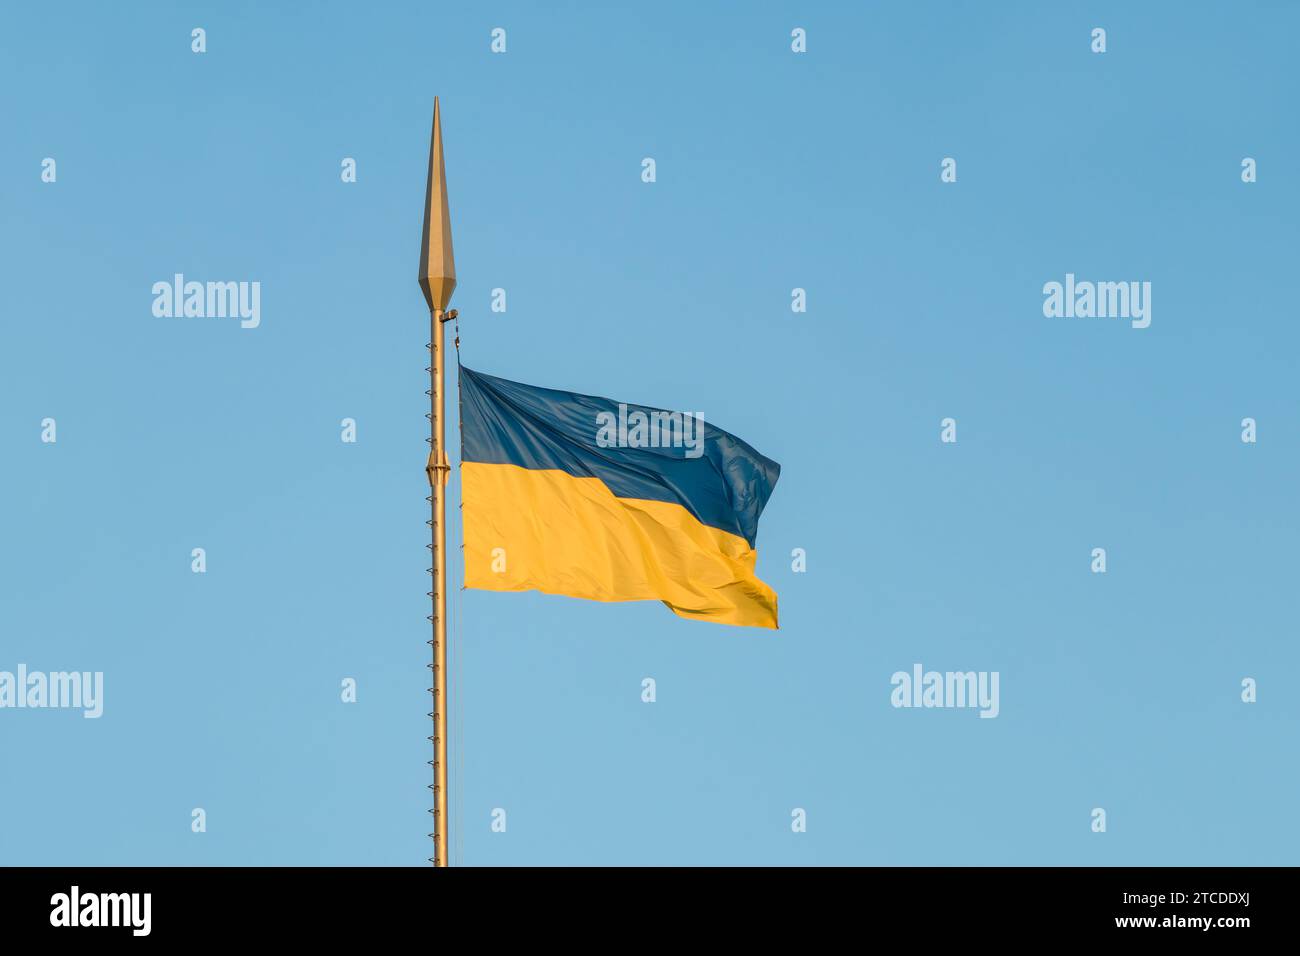 Die Nationalflagge der Ukraine flattert im Wind auf einem hohen Fahnenmast im Sonnenuntergang Stockfoto